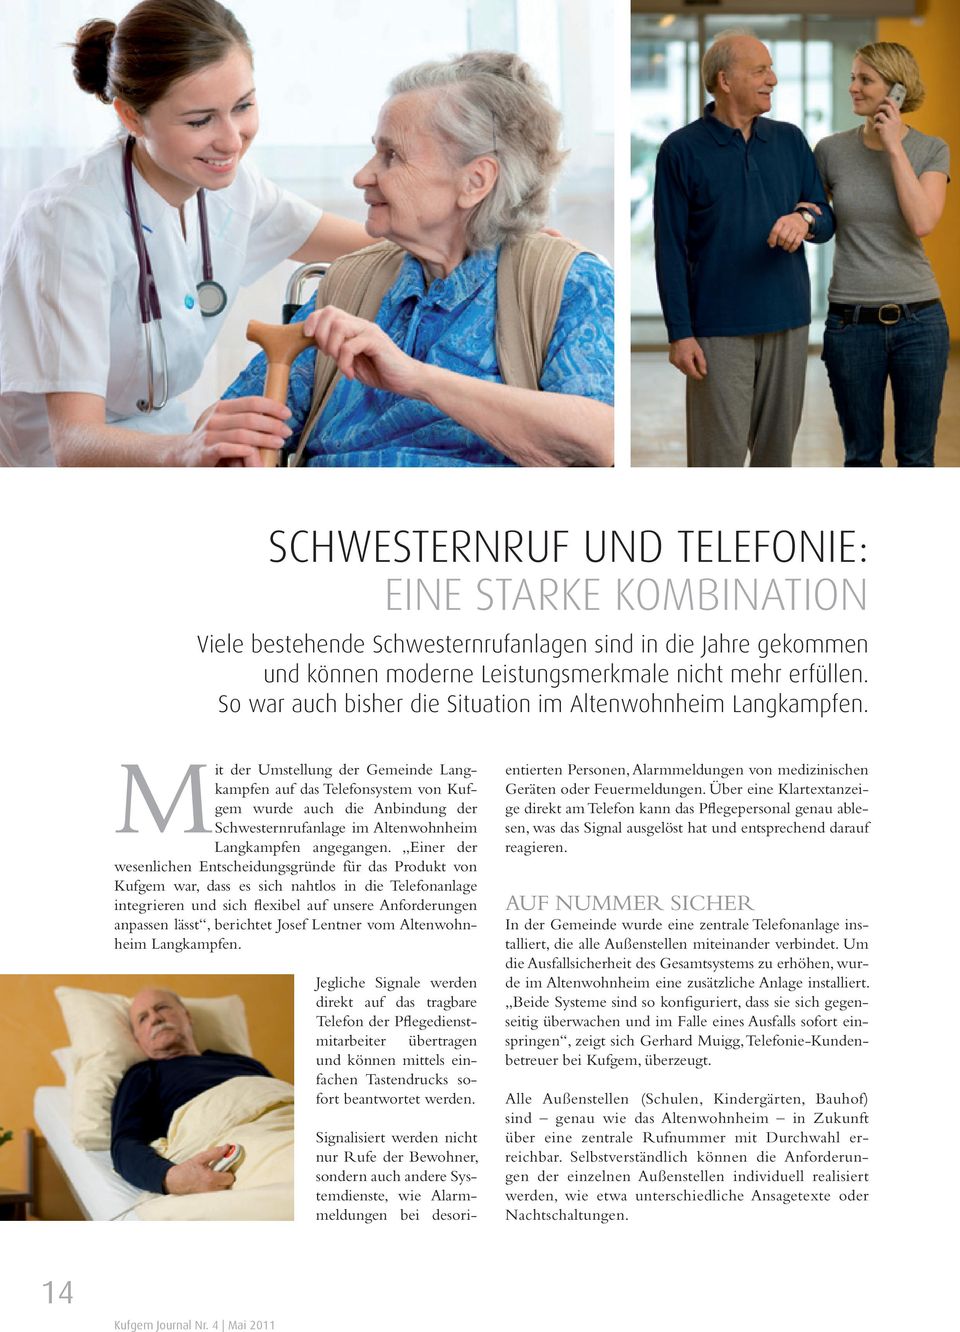 Mit der Umstellung der Gemeinde Langkampfen auf das Telefonsystem von Kufgem wurde auch die Anbindung der Schwesternrufanlage im Altenwohnheim Langkampfen angegangen.